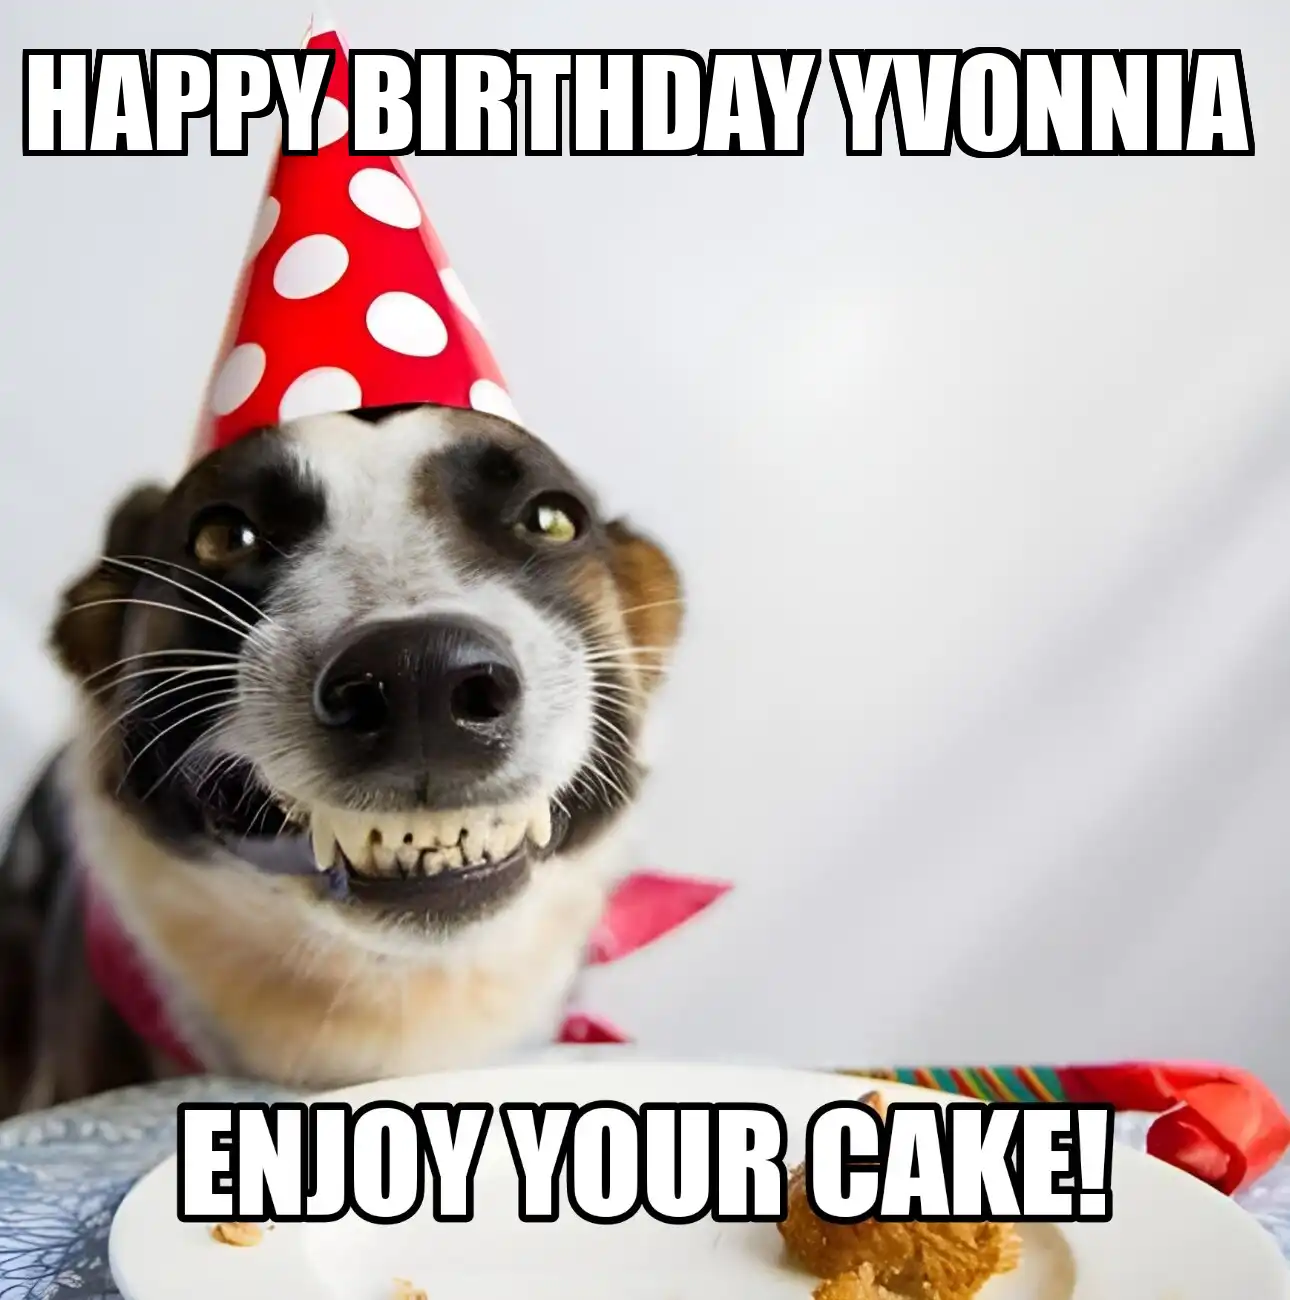 Happy Birthday Yvonnia Enjoy Your Cake Dog Meme